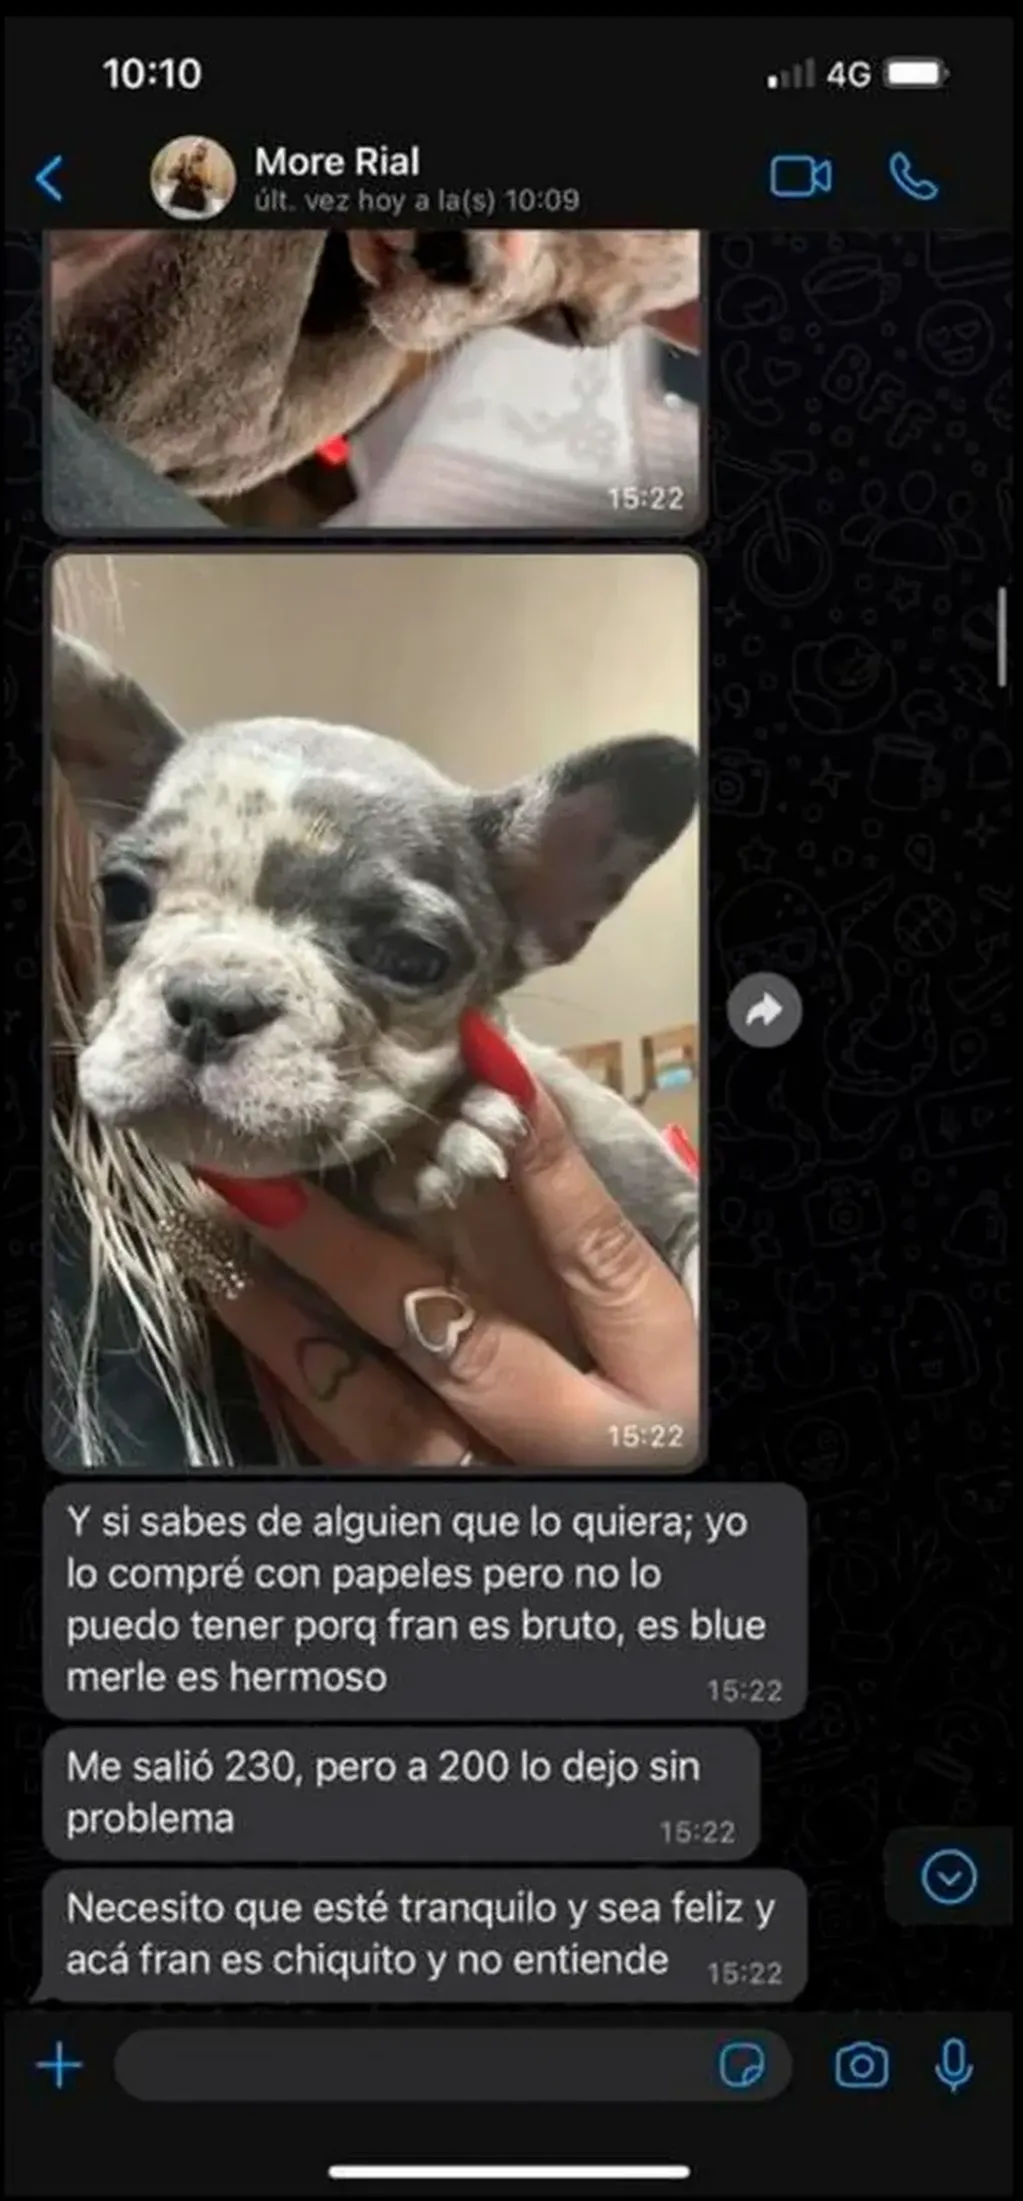 La conversación de WhatsApp entre Morena y una persona que quería comprarle el perro que se viralizó. (Foto: Captura de pantalla)